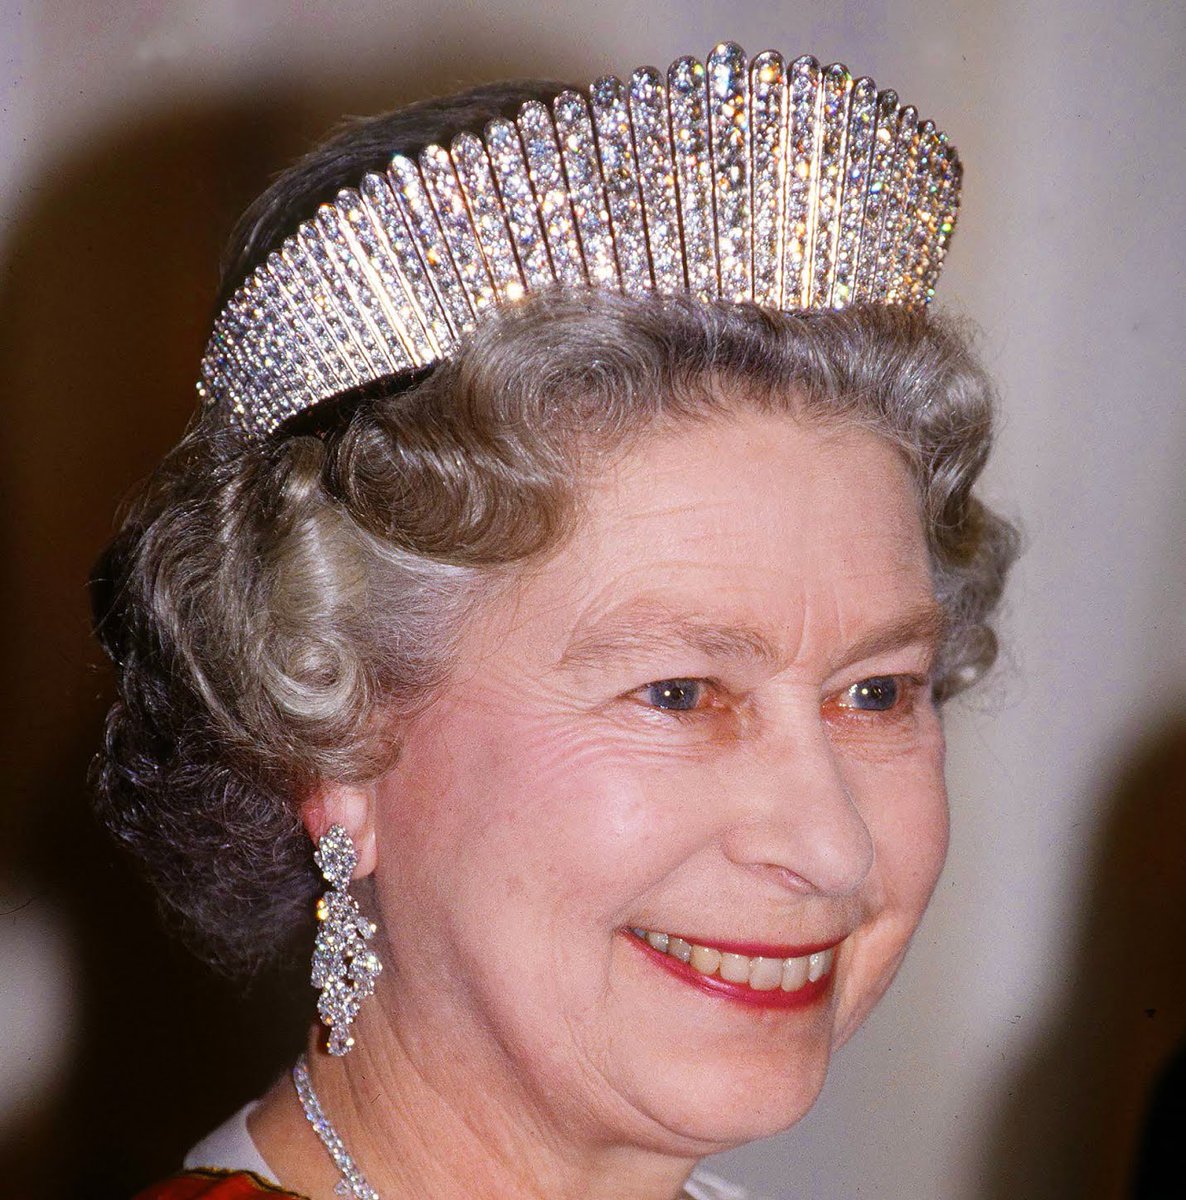 王室的女人王冠好多!英国女王最喜欢这一顶,戴安娜的传家宝耀眼